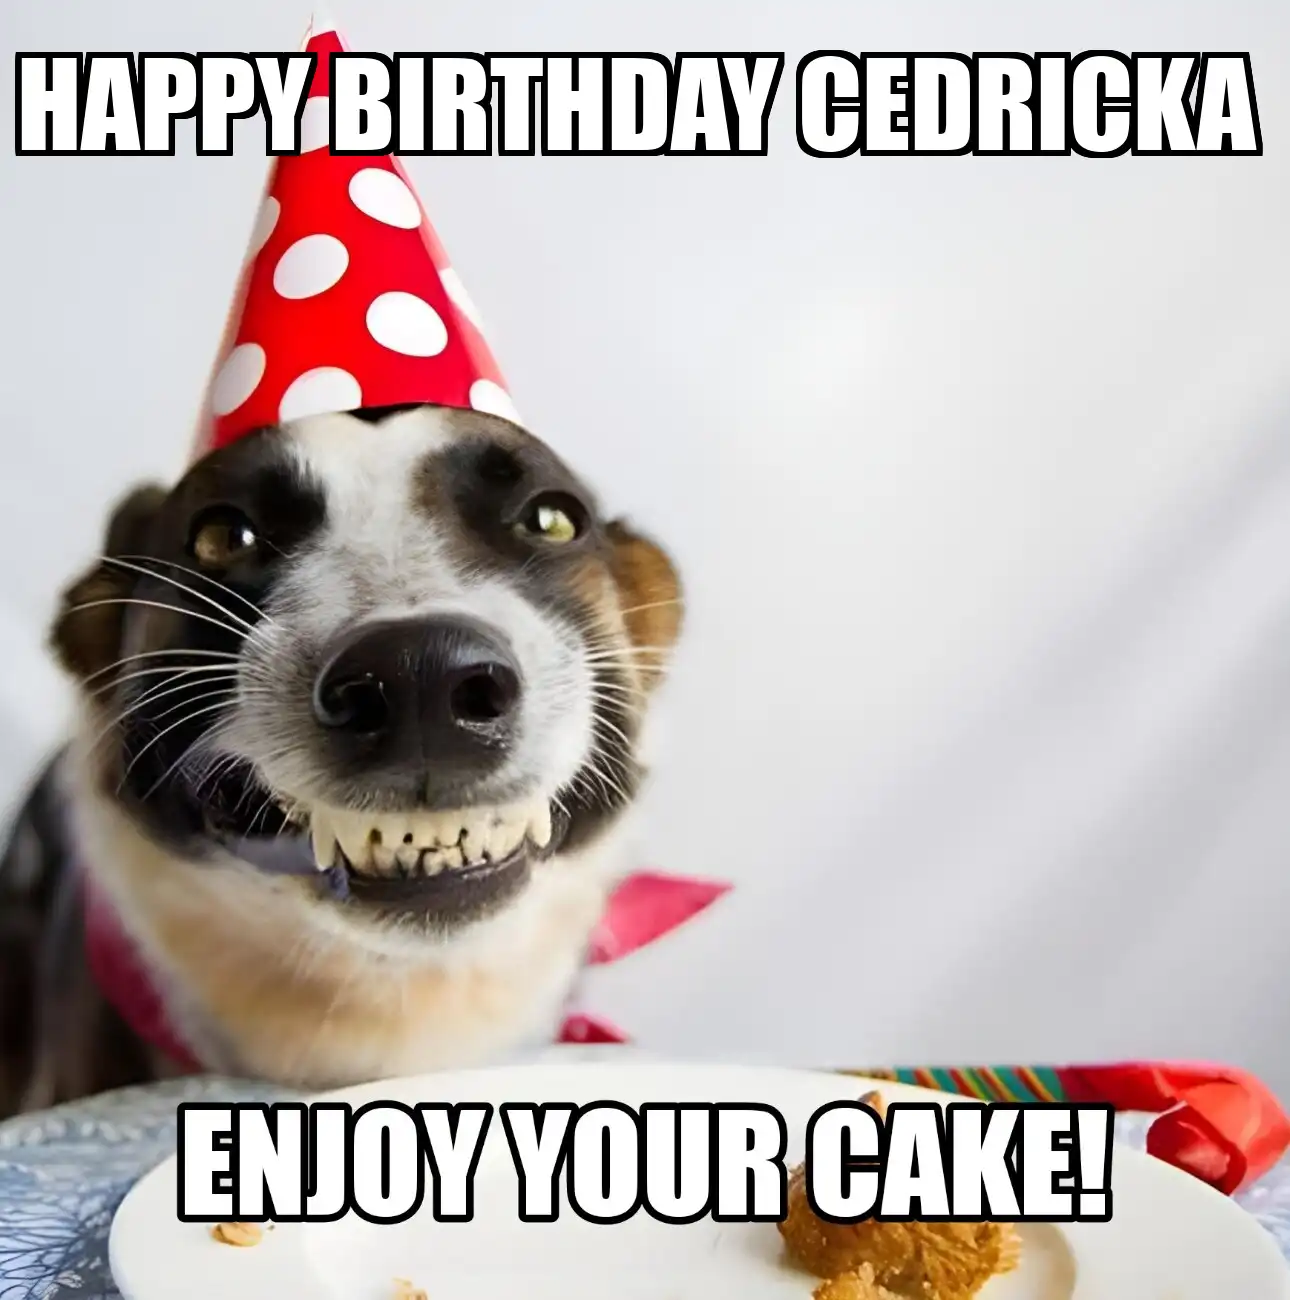 Happy Birthday Cedricka Enjoy Your Cake Dog Meme